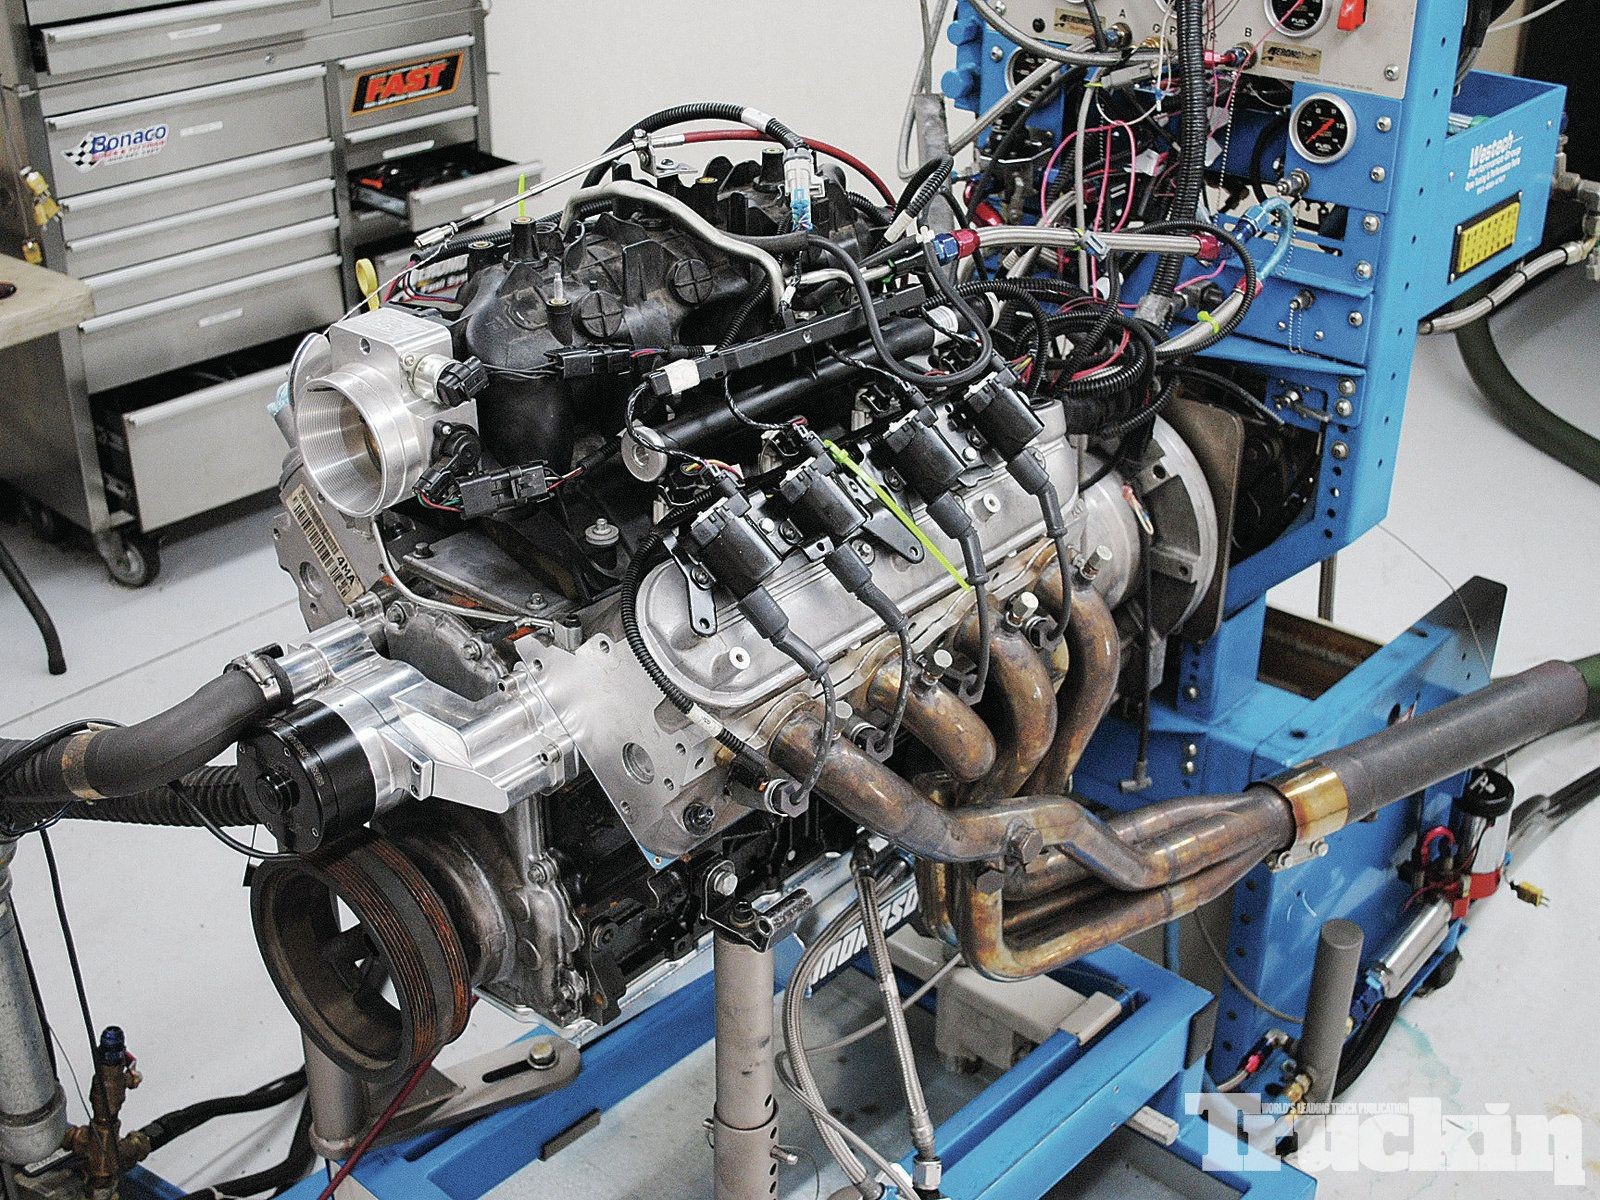 4 3 Vortec Engine Diagram 5 3l Bow Tie Builds Mild to Wild Chevy Lm7 Engines Truckin Magazine Of 4 3 Vortec Engine Diagram